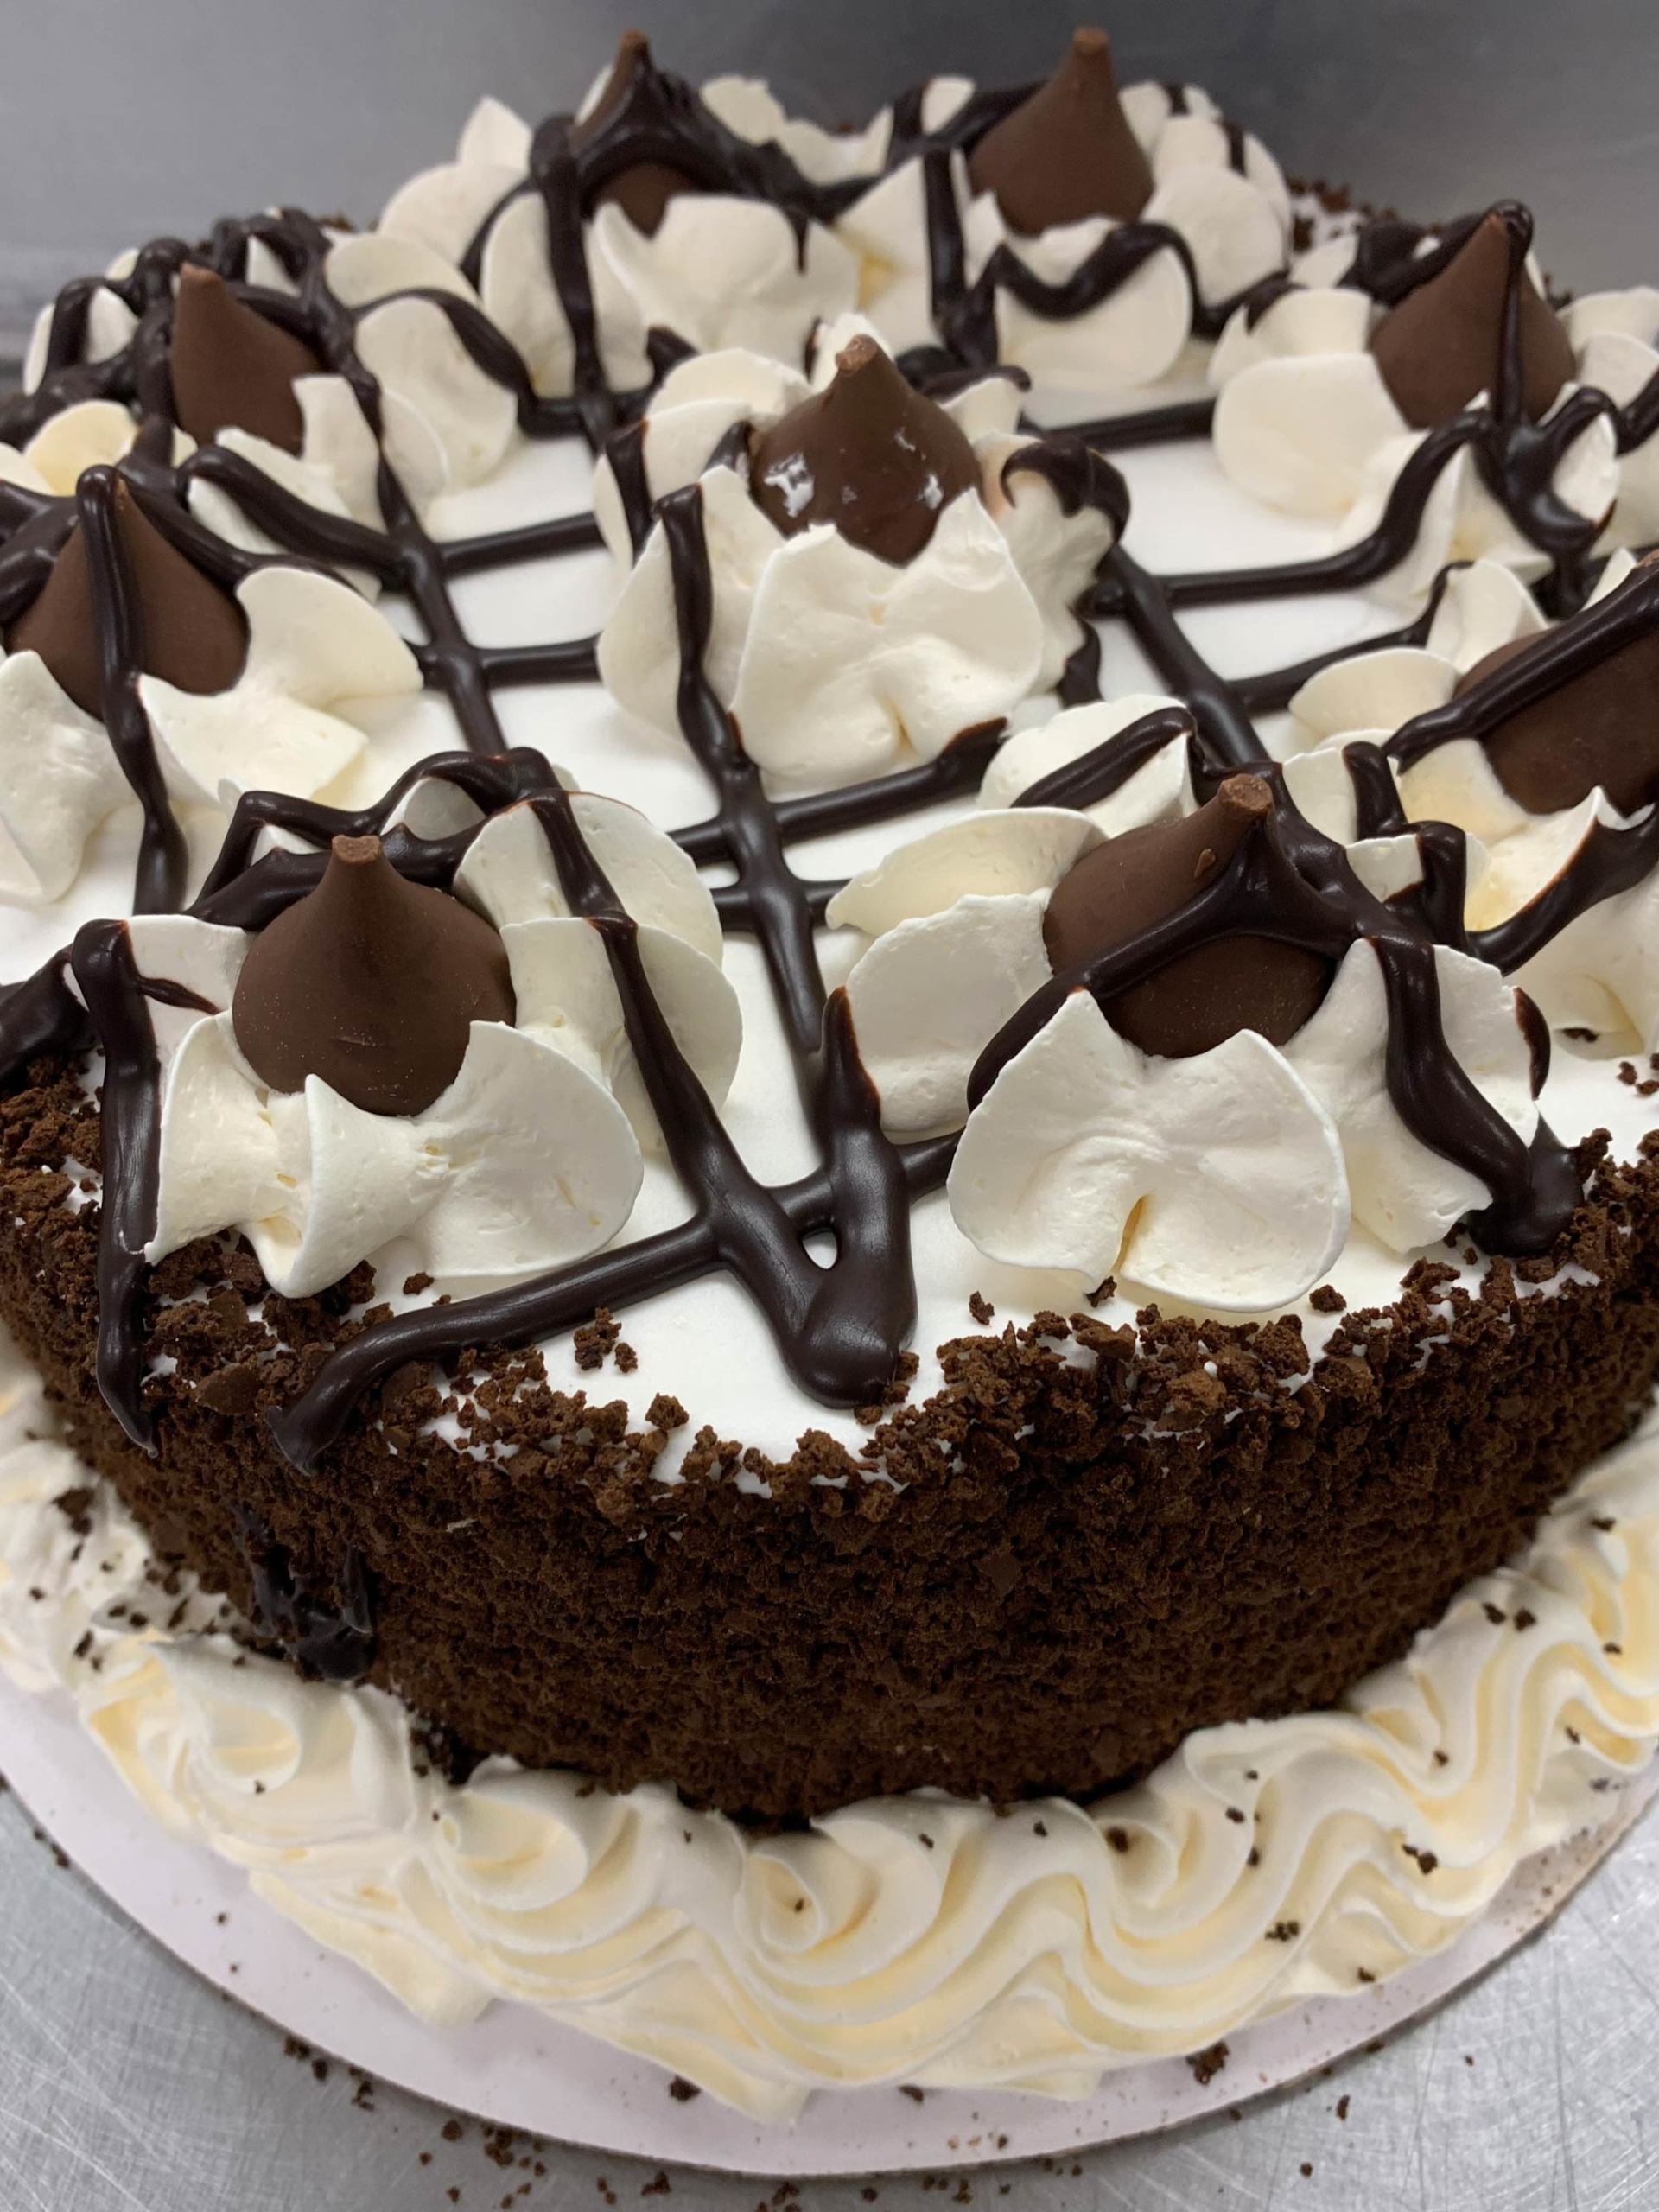 Chocolate & Vanilla Ice Cream Cake